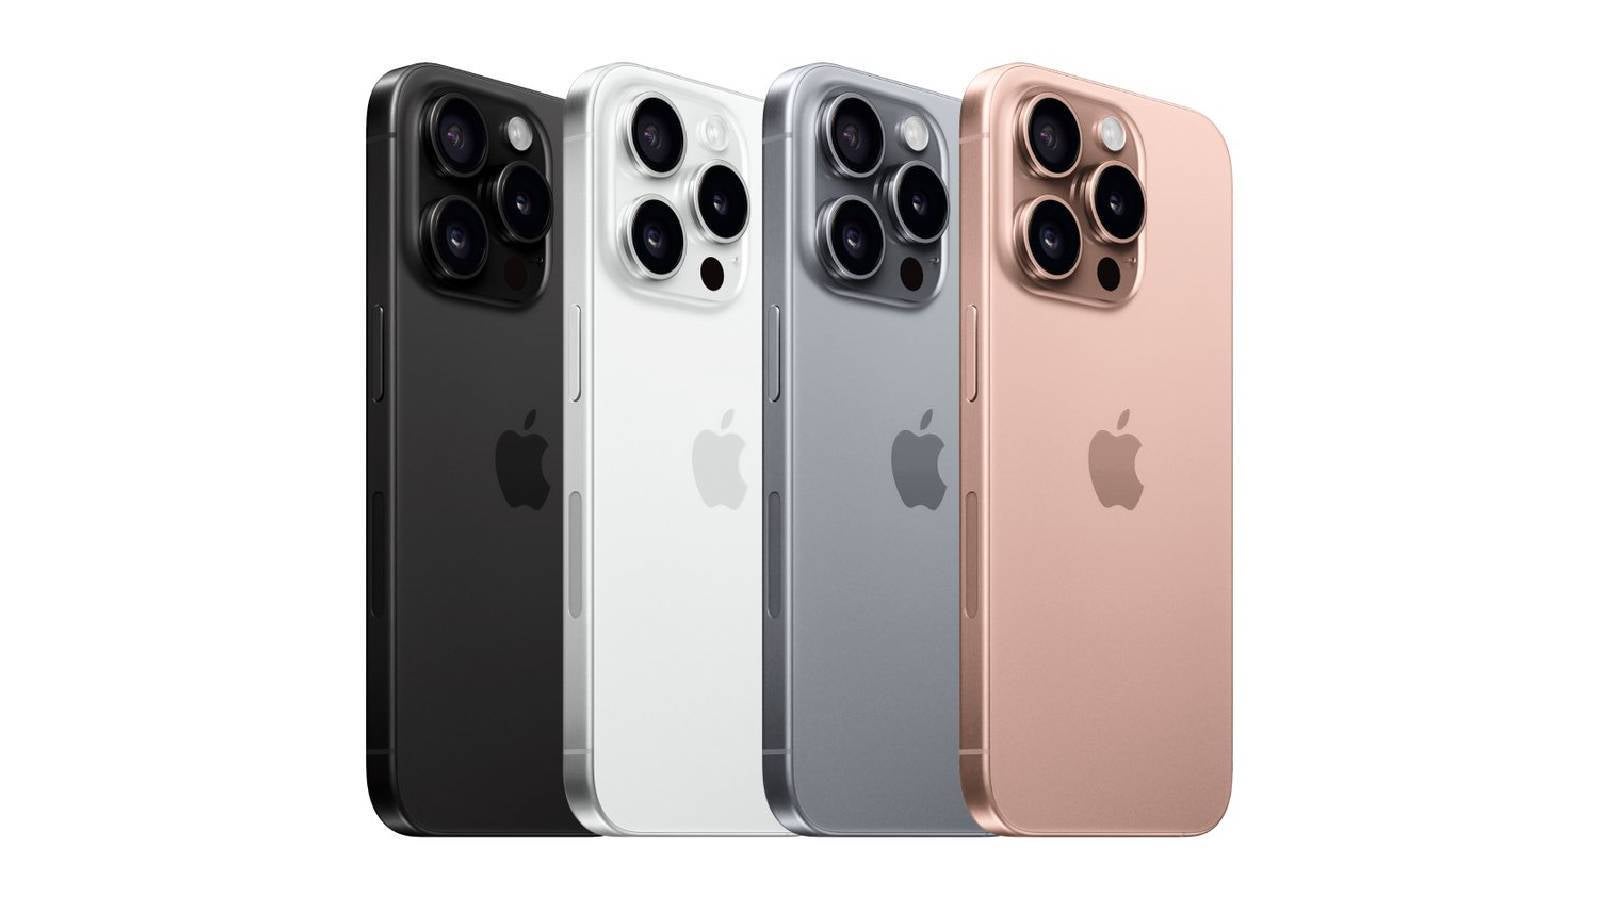 Il reste peu de surprises sur l’iPhone 16 alors que des images d’unités factices, de coques et de nouvelles variantes de couleurs ont été divulguées